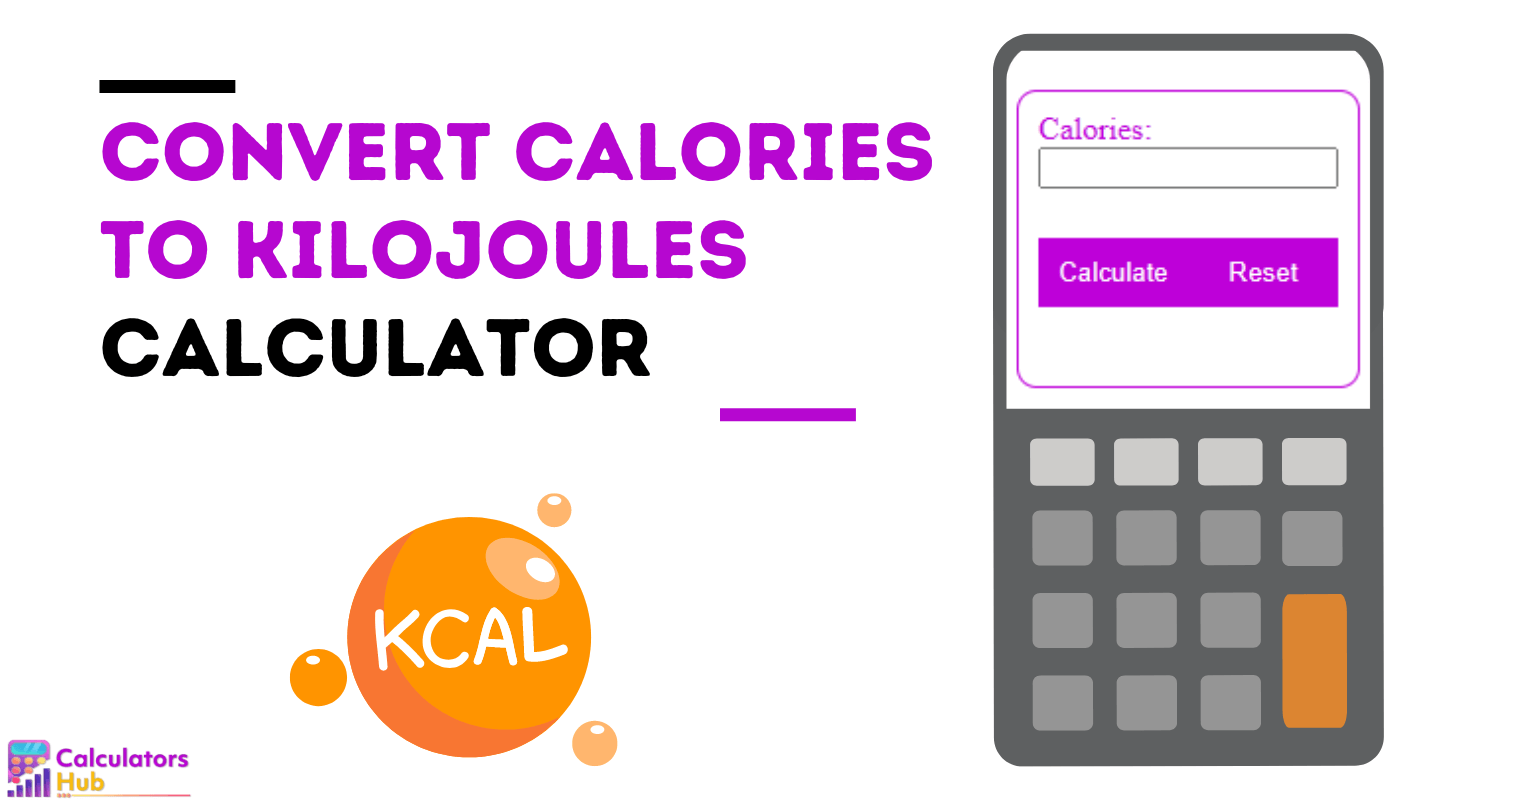 Calculadora de conversión de calorías a kilojulios